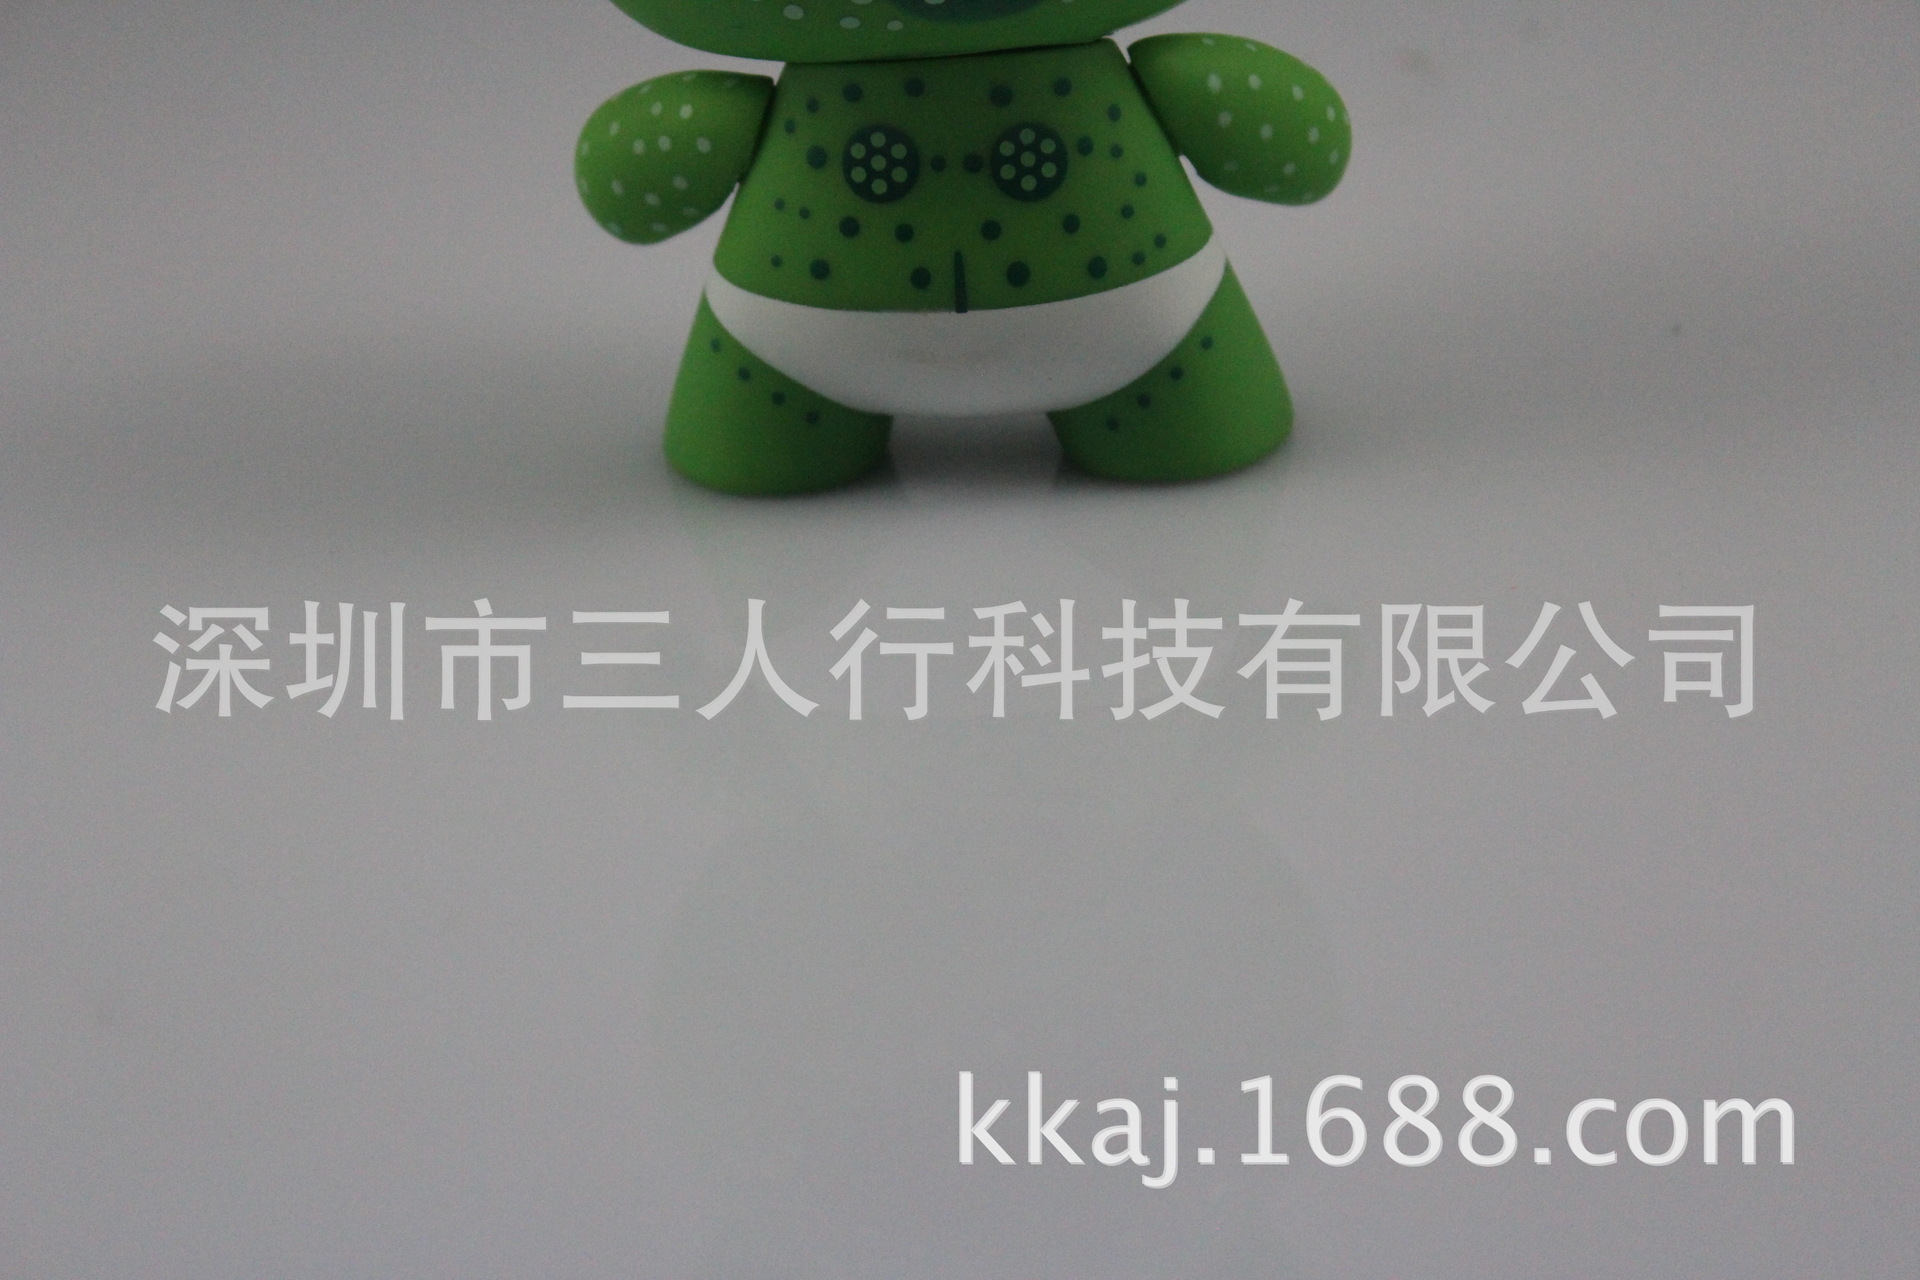 家直销【优质】搪胶环保玩具公仔,日本动漫公